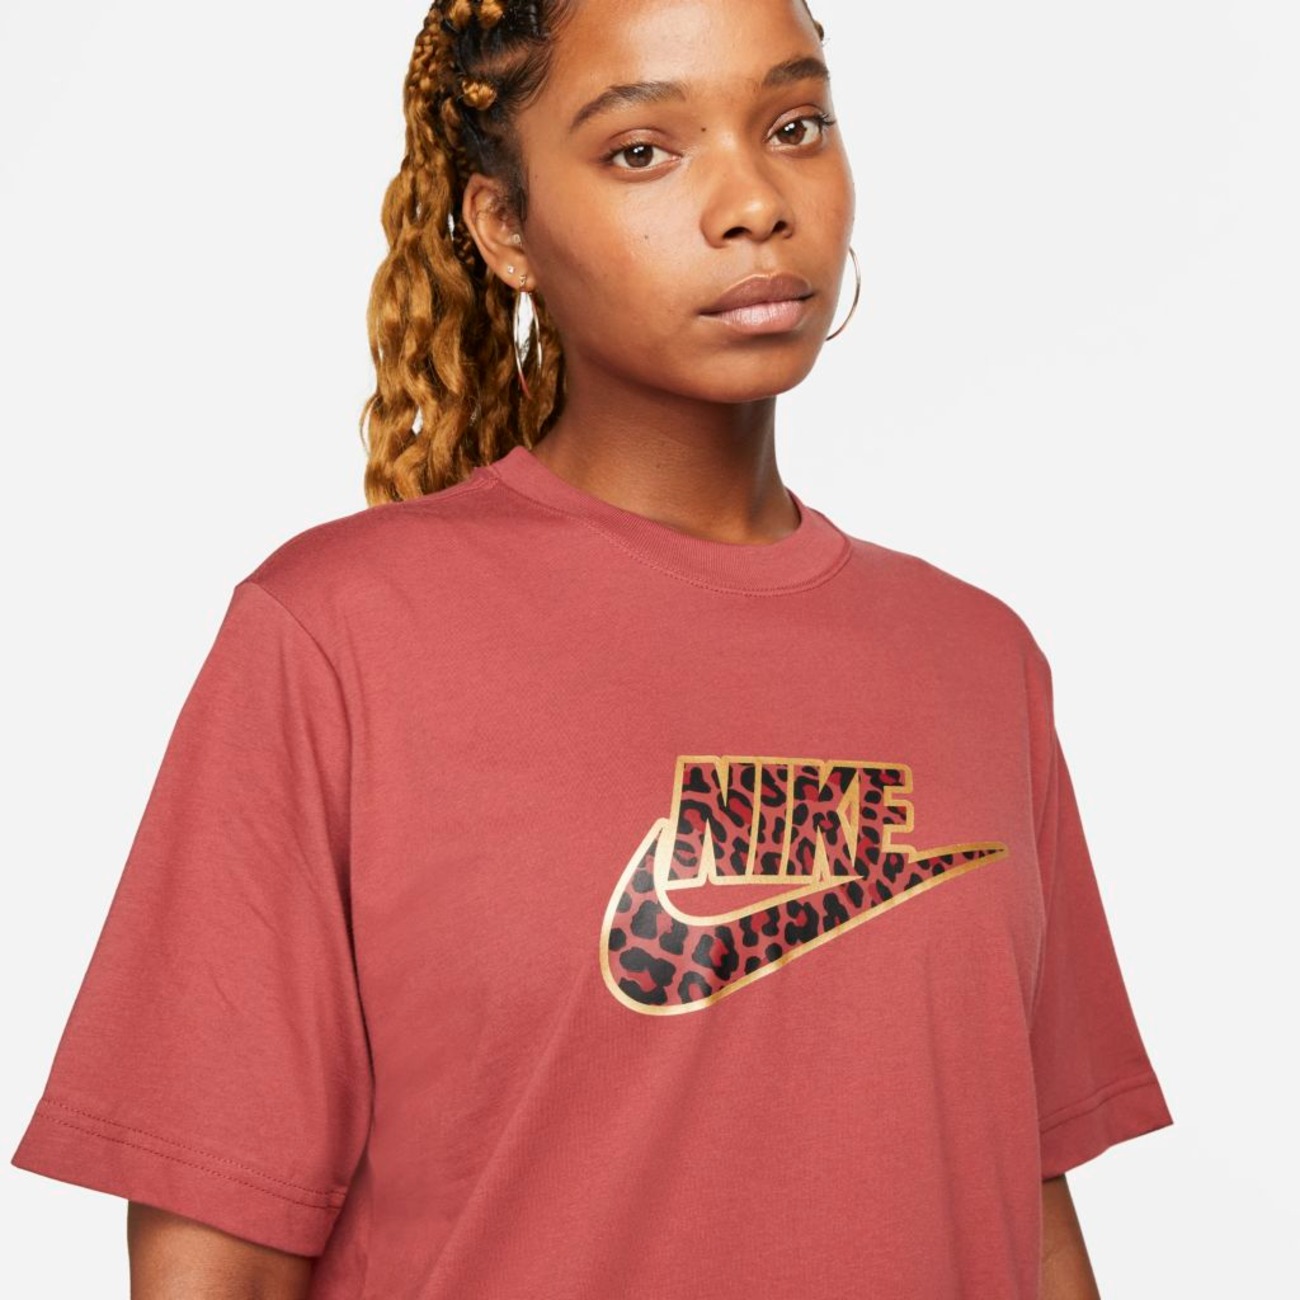 Camiseta Nike Sportswear Feminina - Foto 3